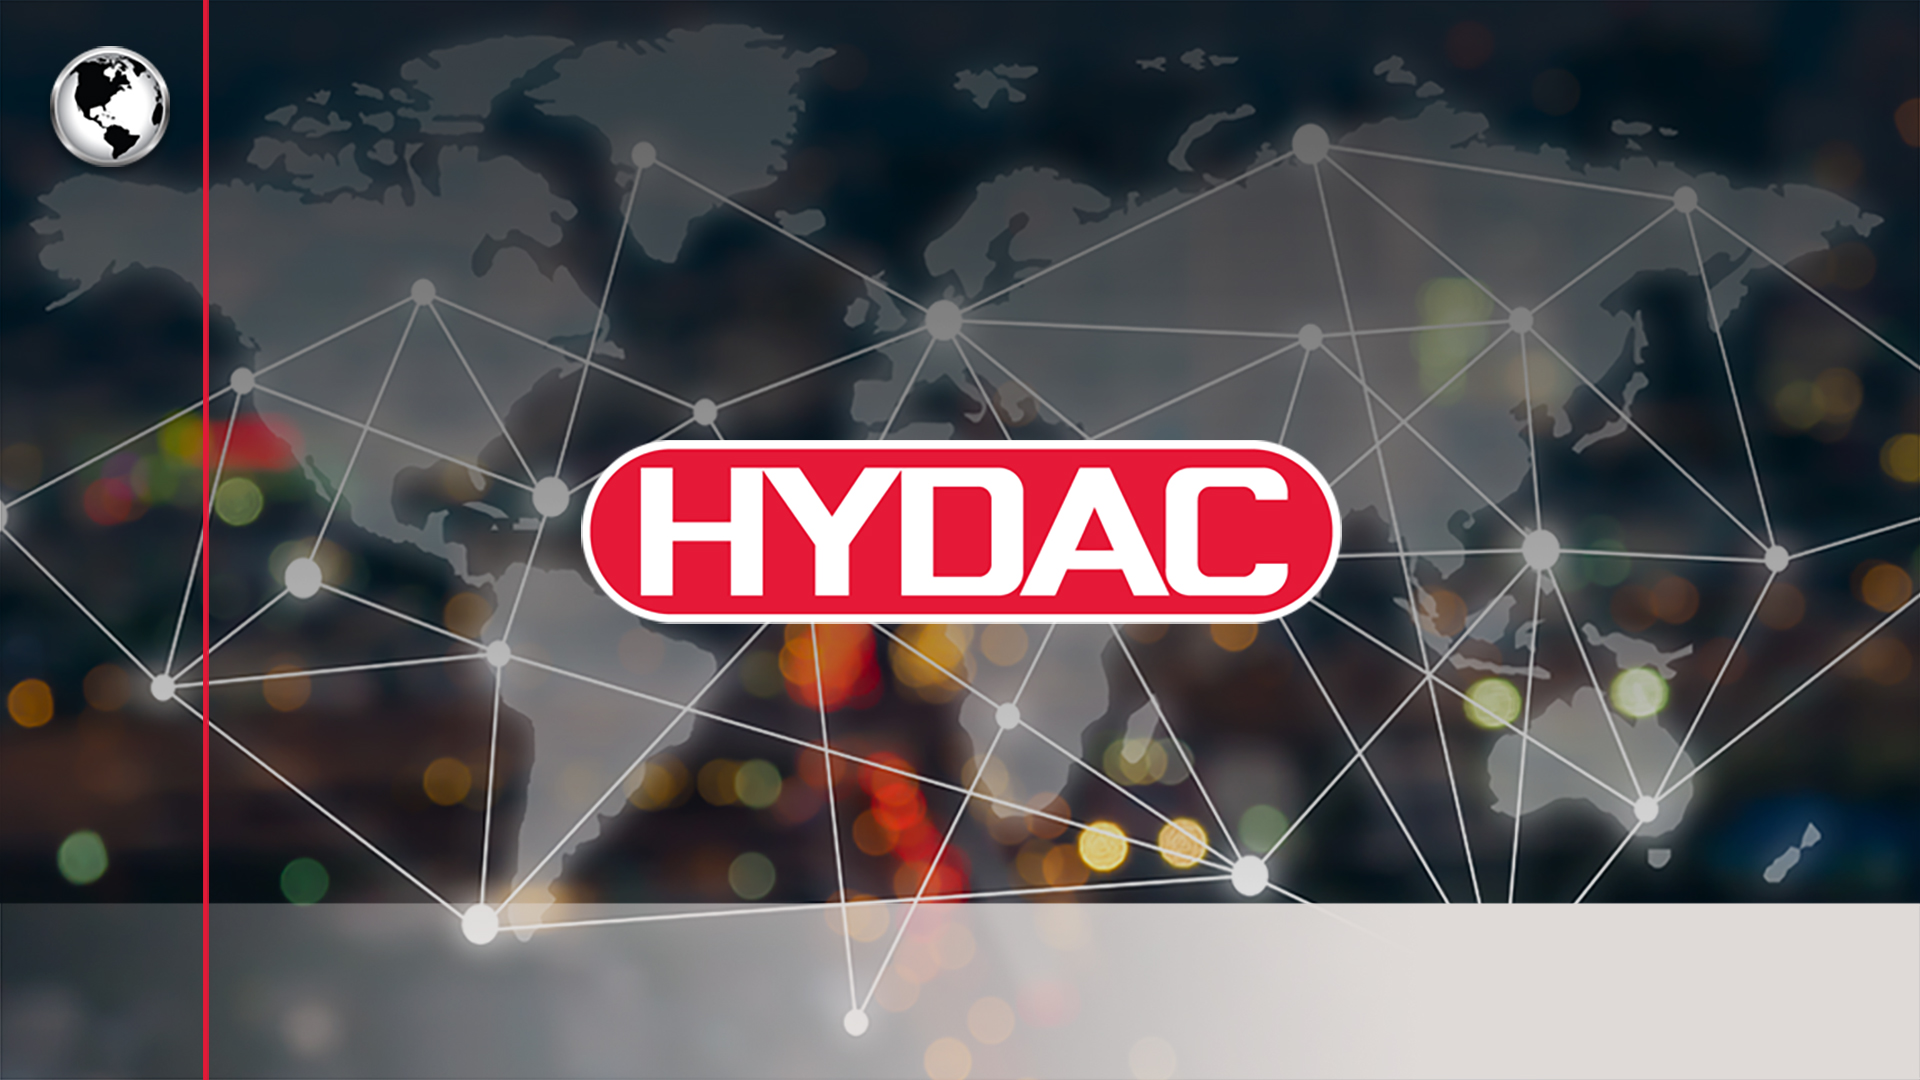 HYDAC Corporate Video